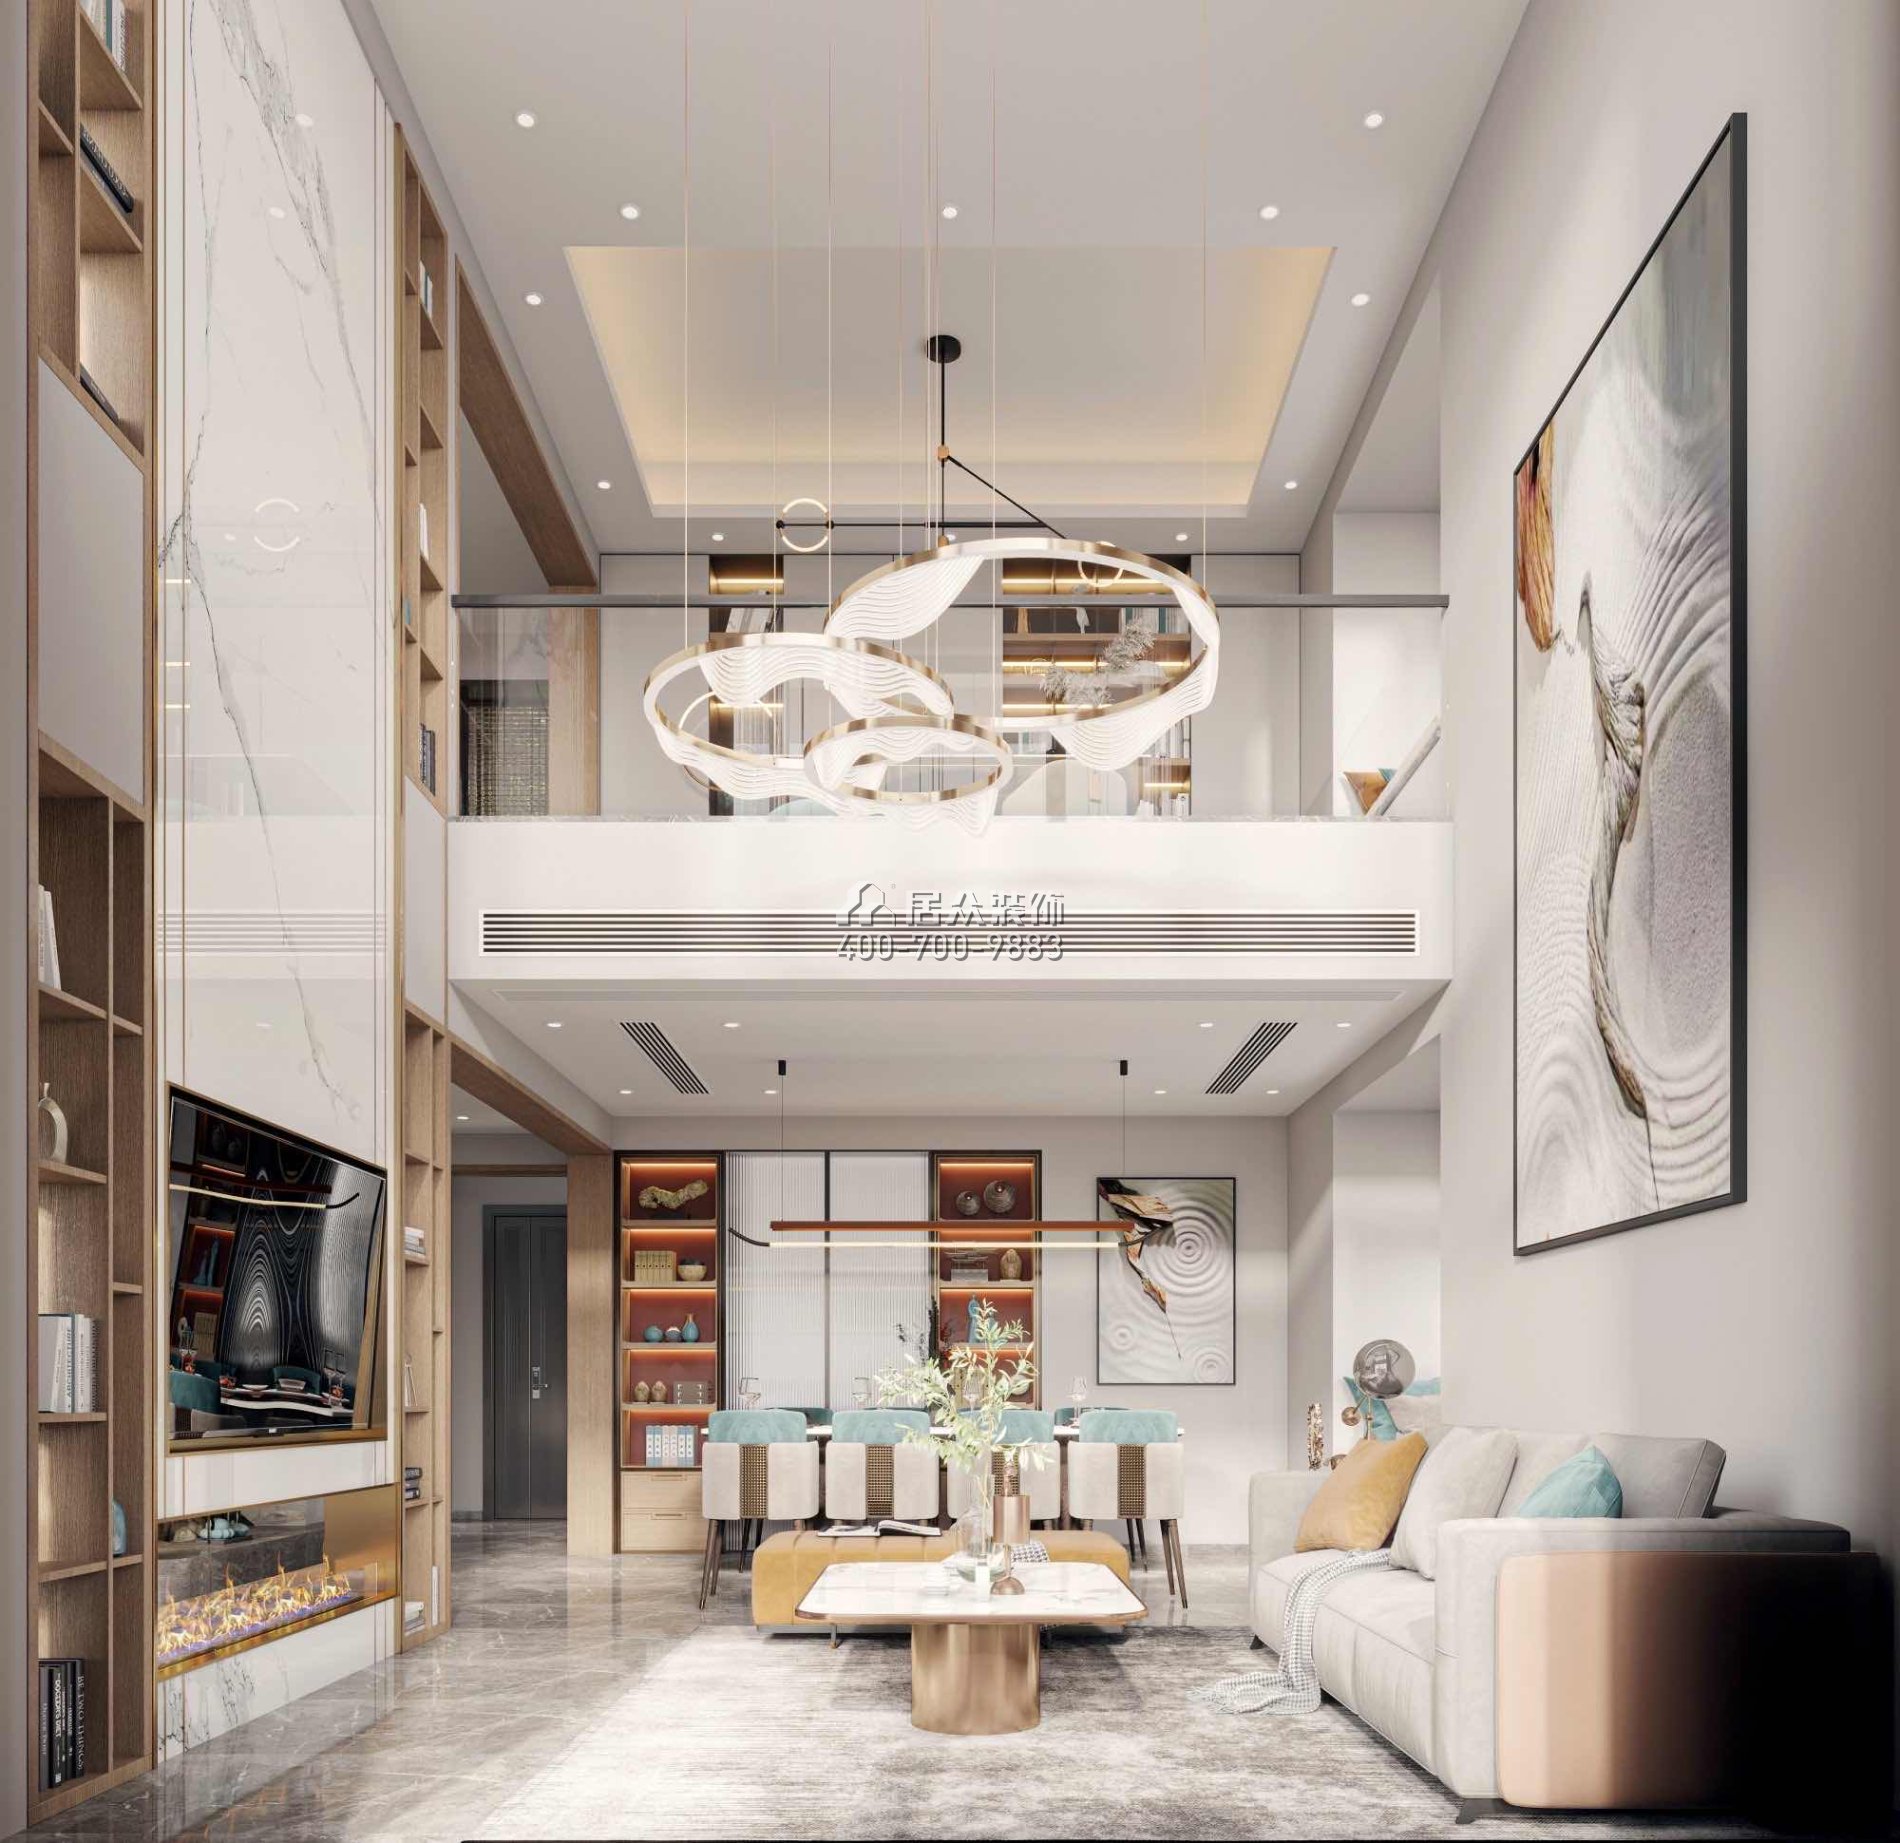 金鸿利嘉阁320平方米中式风格复式户型餐厅kok电竞平台效果图